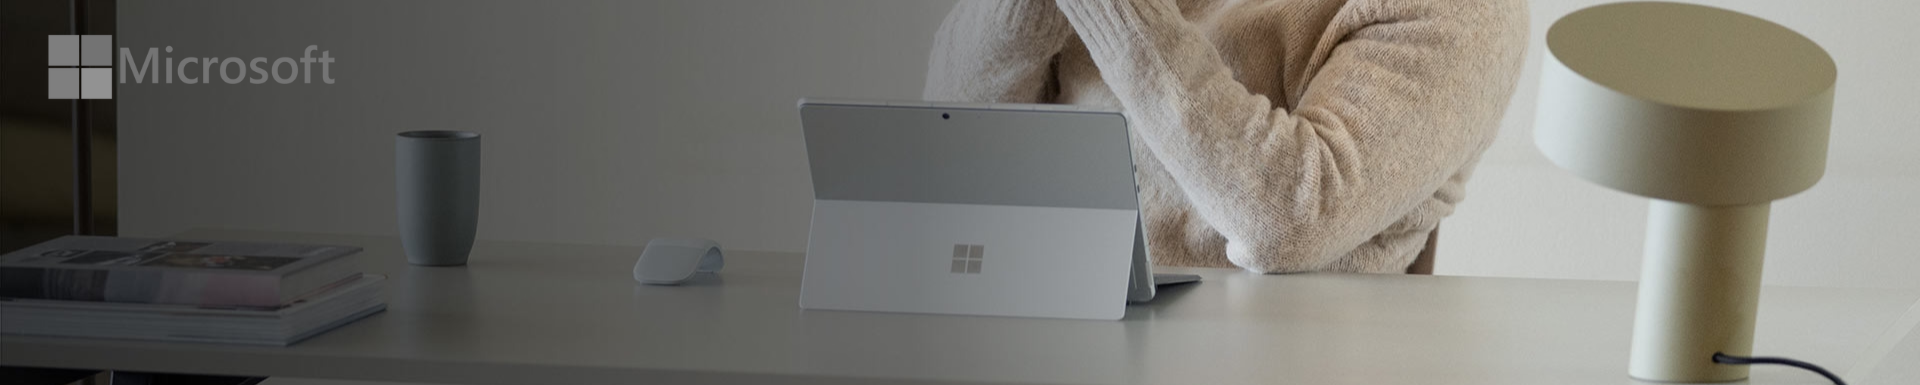 Microsoft Surface Promotie - korting op diverse modellen Laptop 5 en Pro 9 